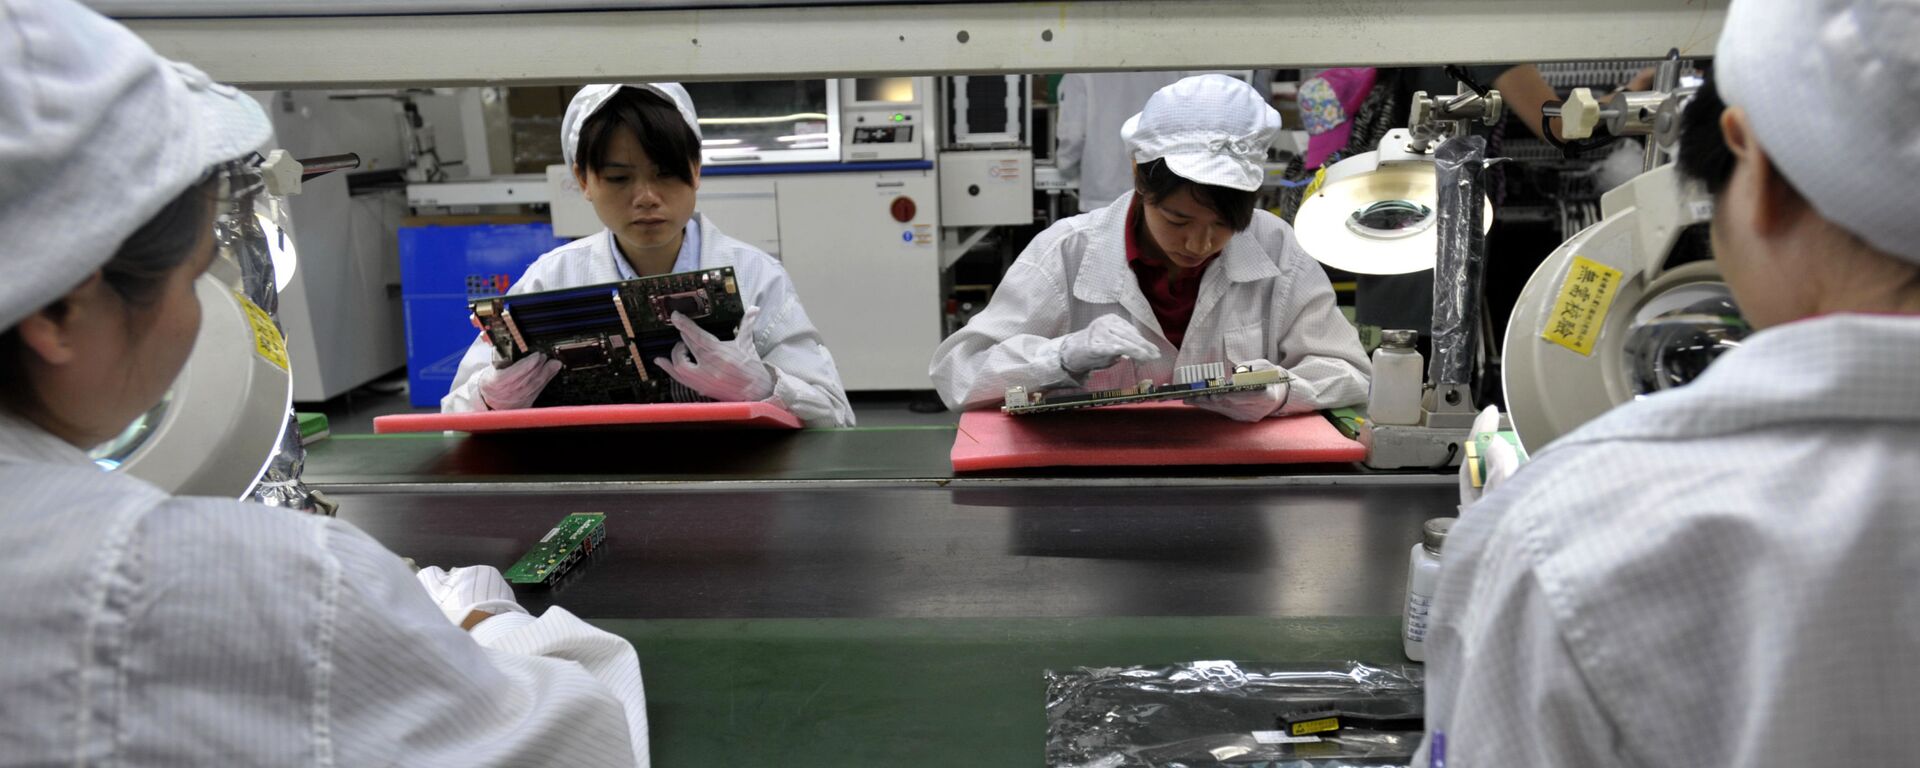 Công nhân Trung Quốc lắp ráp linh kiện điện tử trong nhà máy thuộc công ty khổng lồ Foxconn của Đài Loan tại Thâm Quyến, Trung Quốc - Sputnik Việt Nam, 1920, 26.11.2020